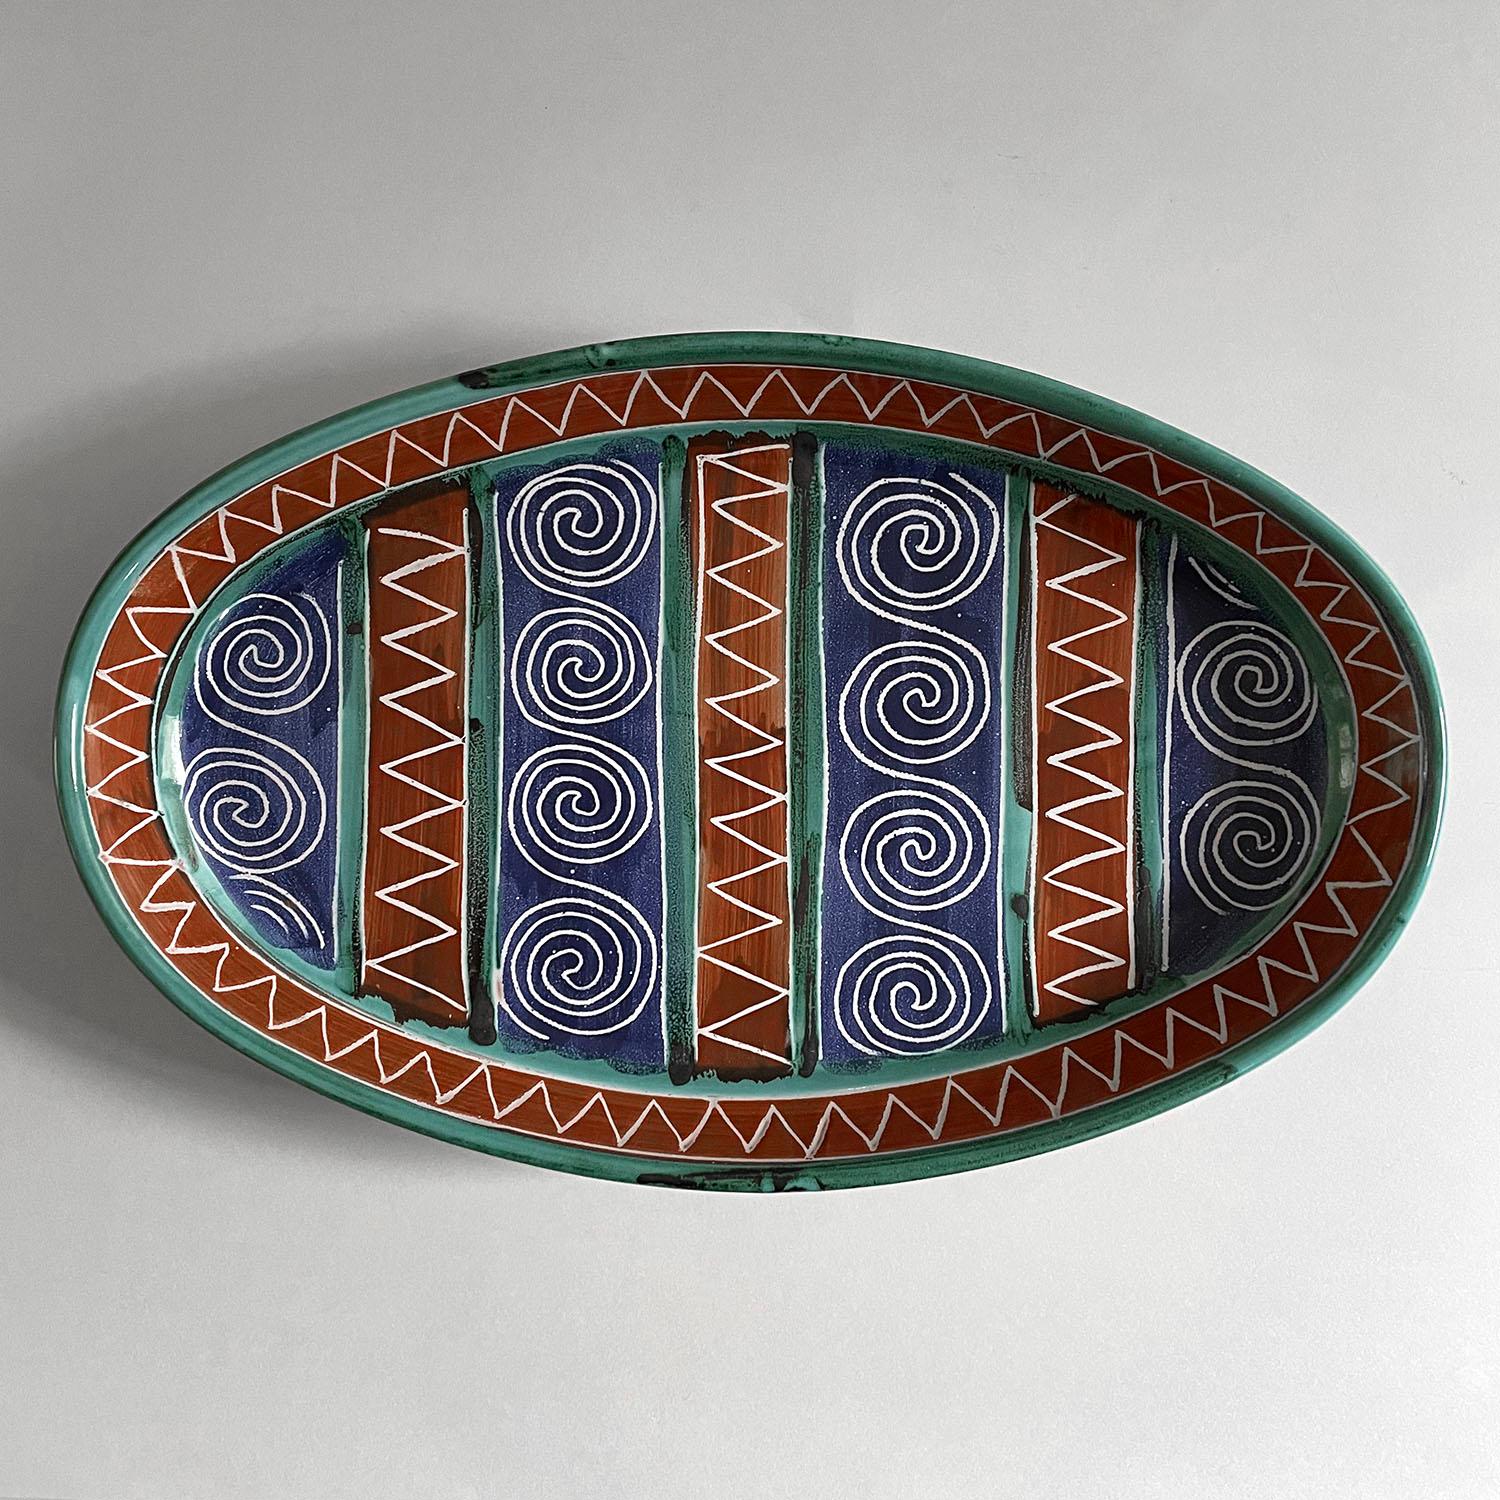 Robert Picault Ovales Tablett aus Keramik
Frankreich, ca. 1950er Jahre
Verschönern Sie Ihren Tisch mit der Perfektion von Picault
Das handgefertigte Tablett hat eine wunderschöne Farbpalette und verspielte Muster
Patina durch Alter und